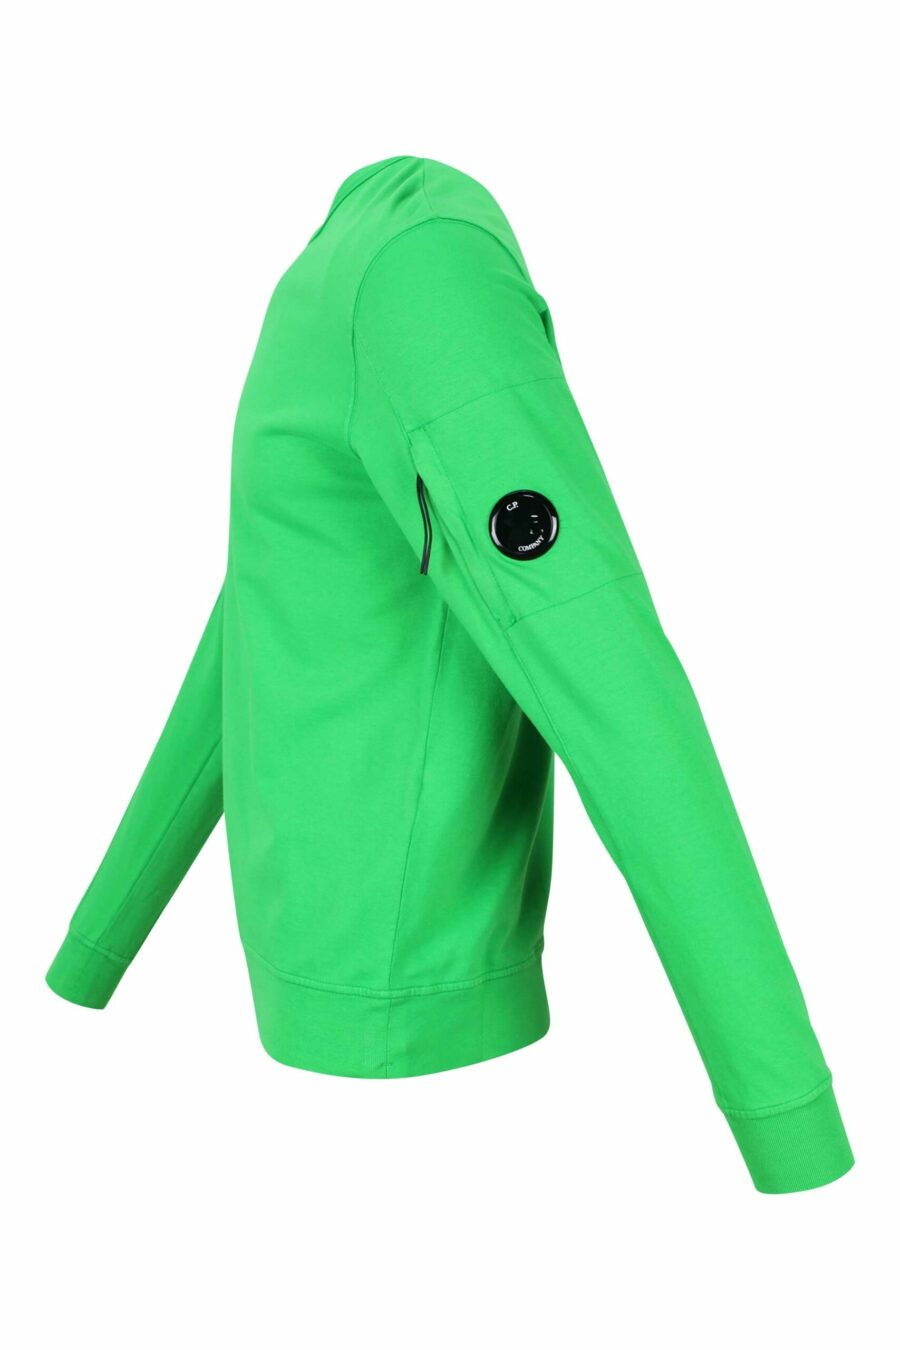 Grünes Sweatshirt mit minilogue Seitenlinse - 7620943586725 1 1 skaliert